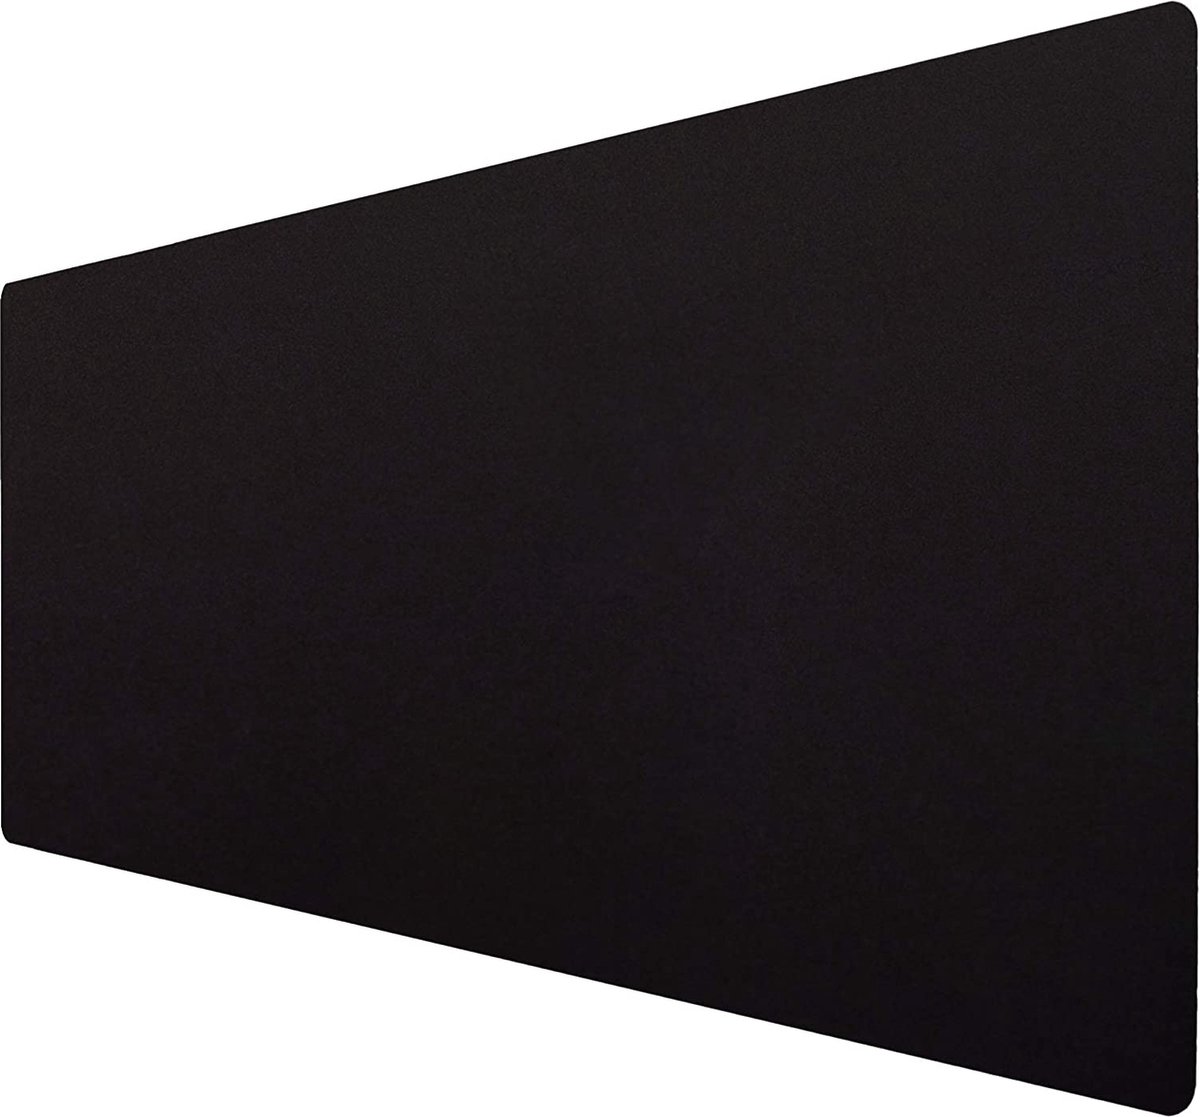 GOMIN Muismat XXL - 900 x 400 mm gaming muismat antislip - naadloze randen - verbetert snelheid en precisie, bureauonderlegger voor pc, laptop, thuiskantoor en kantoor - muismat zwart